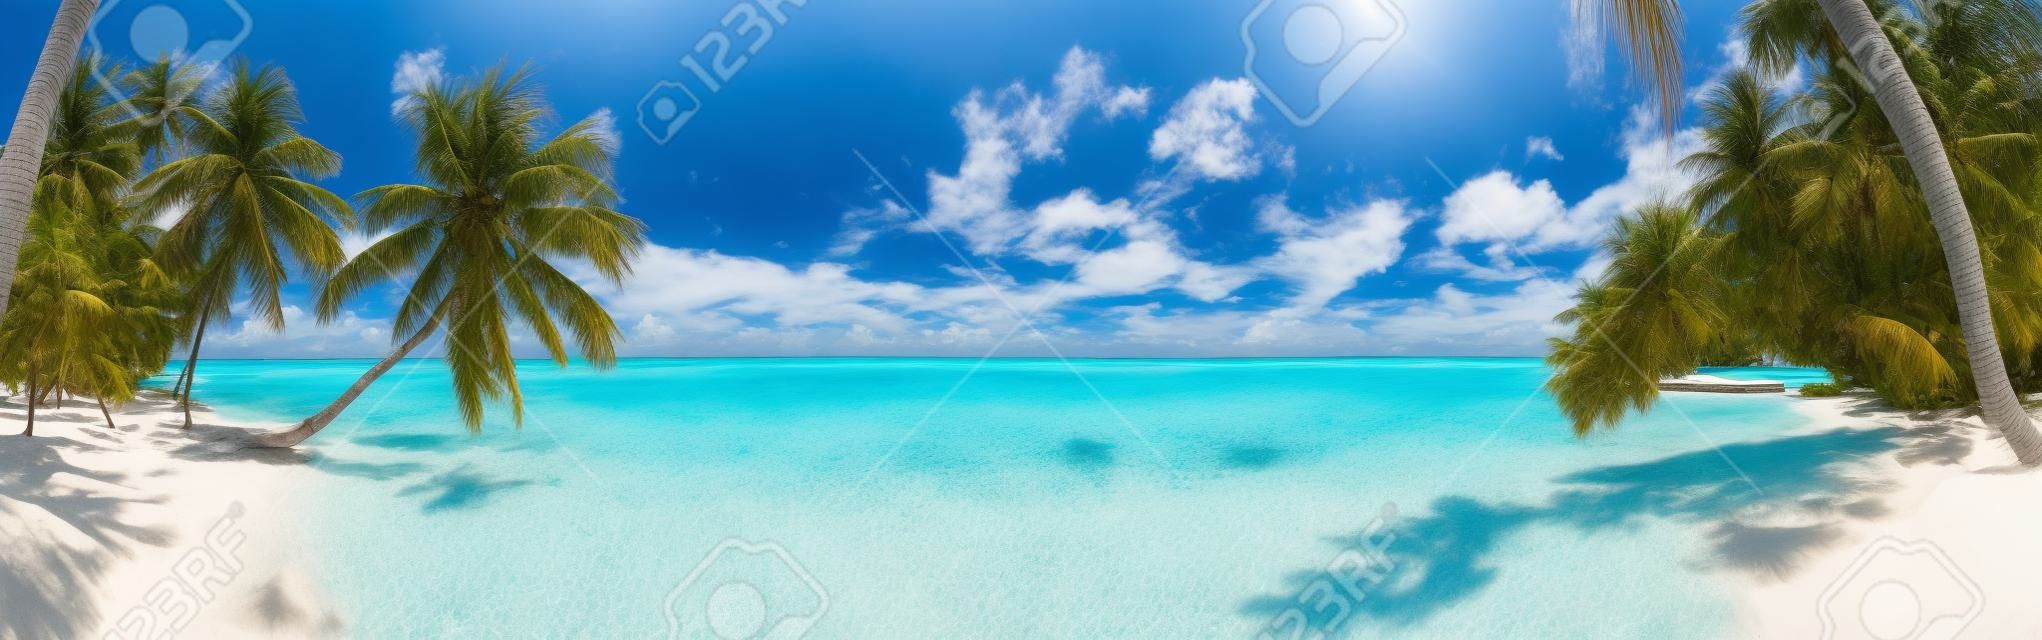 푸른 하늘, 야자수와 청록색 물 몰디브에서 해변 파노라마